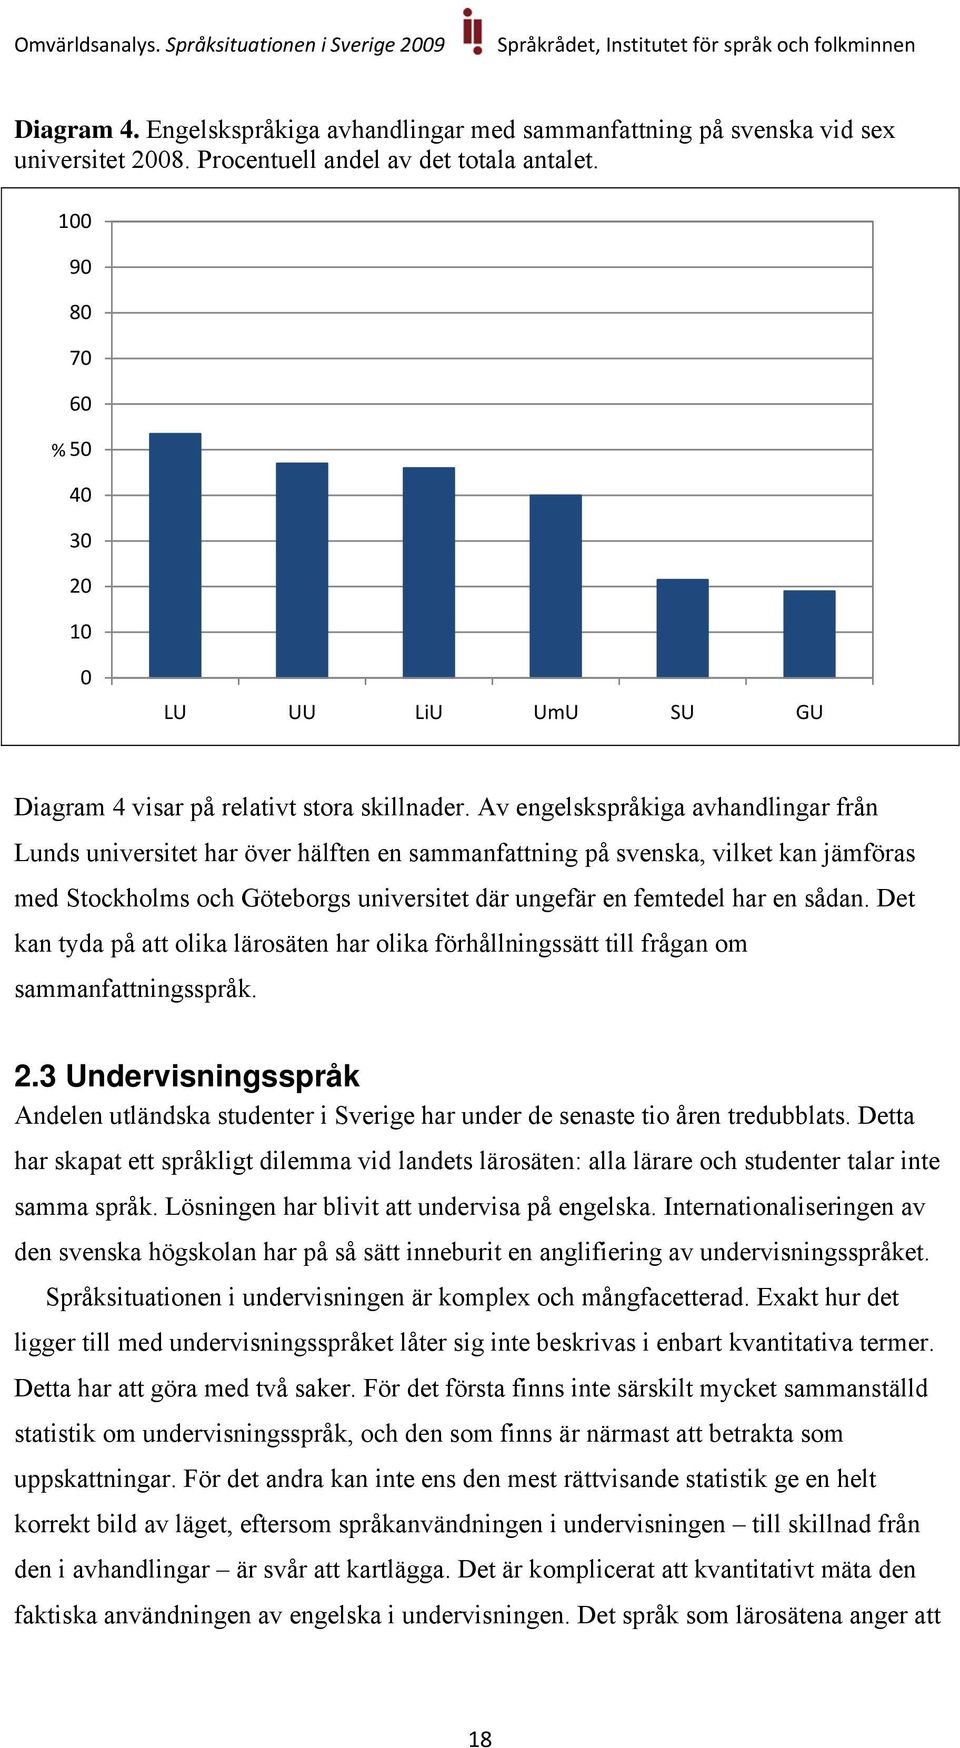 Av engelskspråkiga avhandlingar från Lunds universitet har över hälften en sammanfattning på svenska, vilket kan jämföras med Stockholms och Göteborgs universitet där ungefär en femtedel har en sådan.